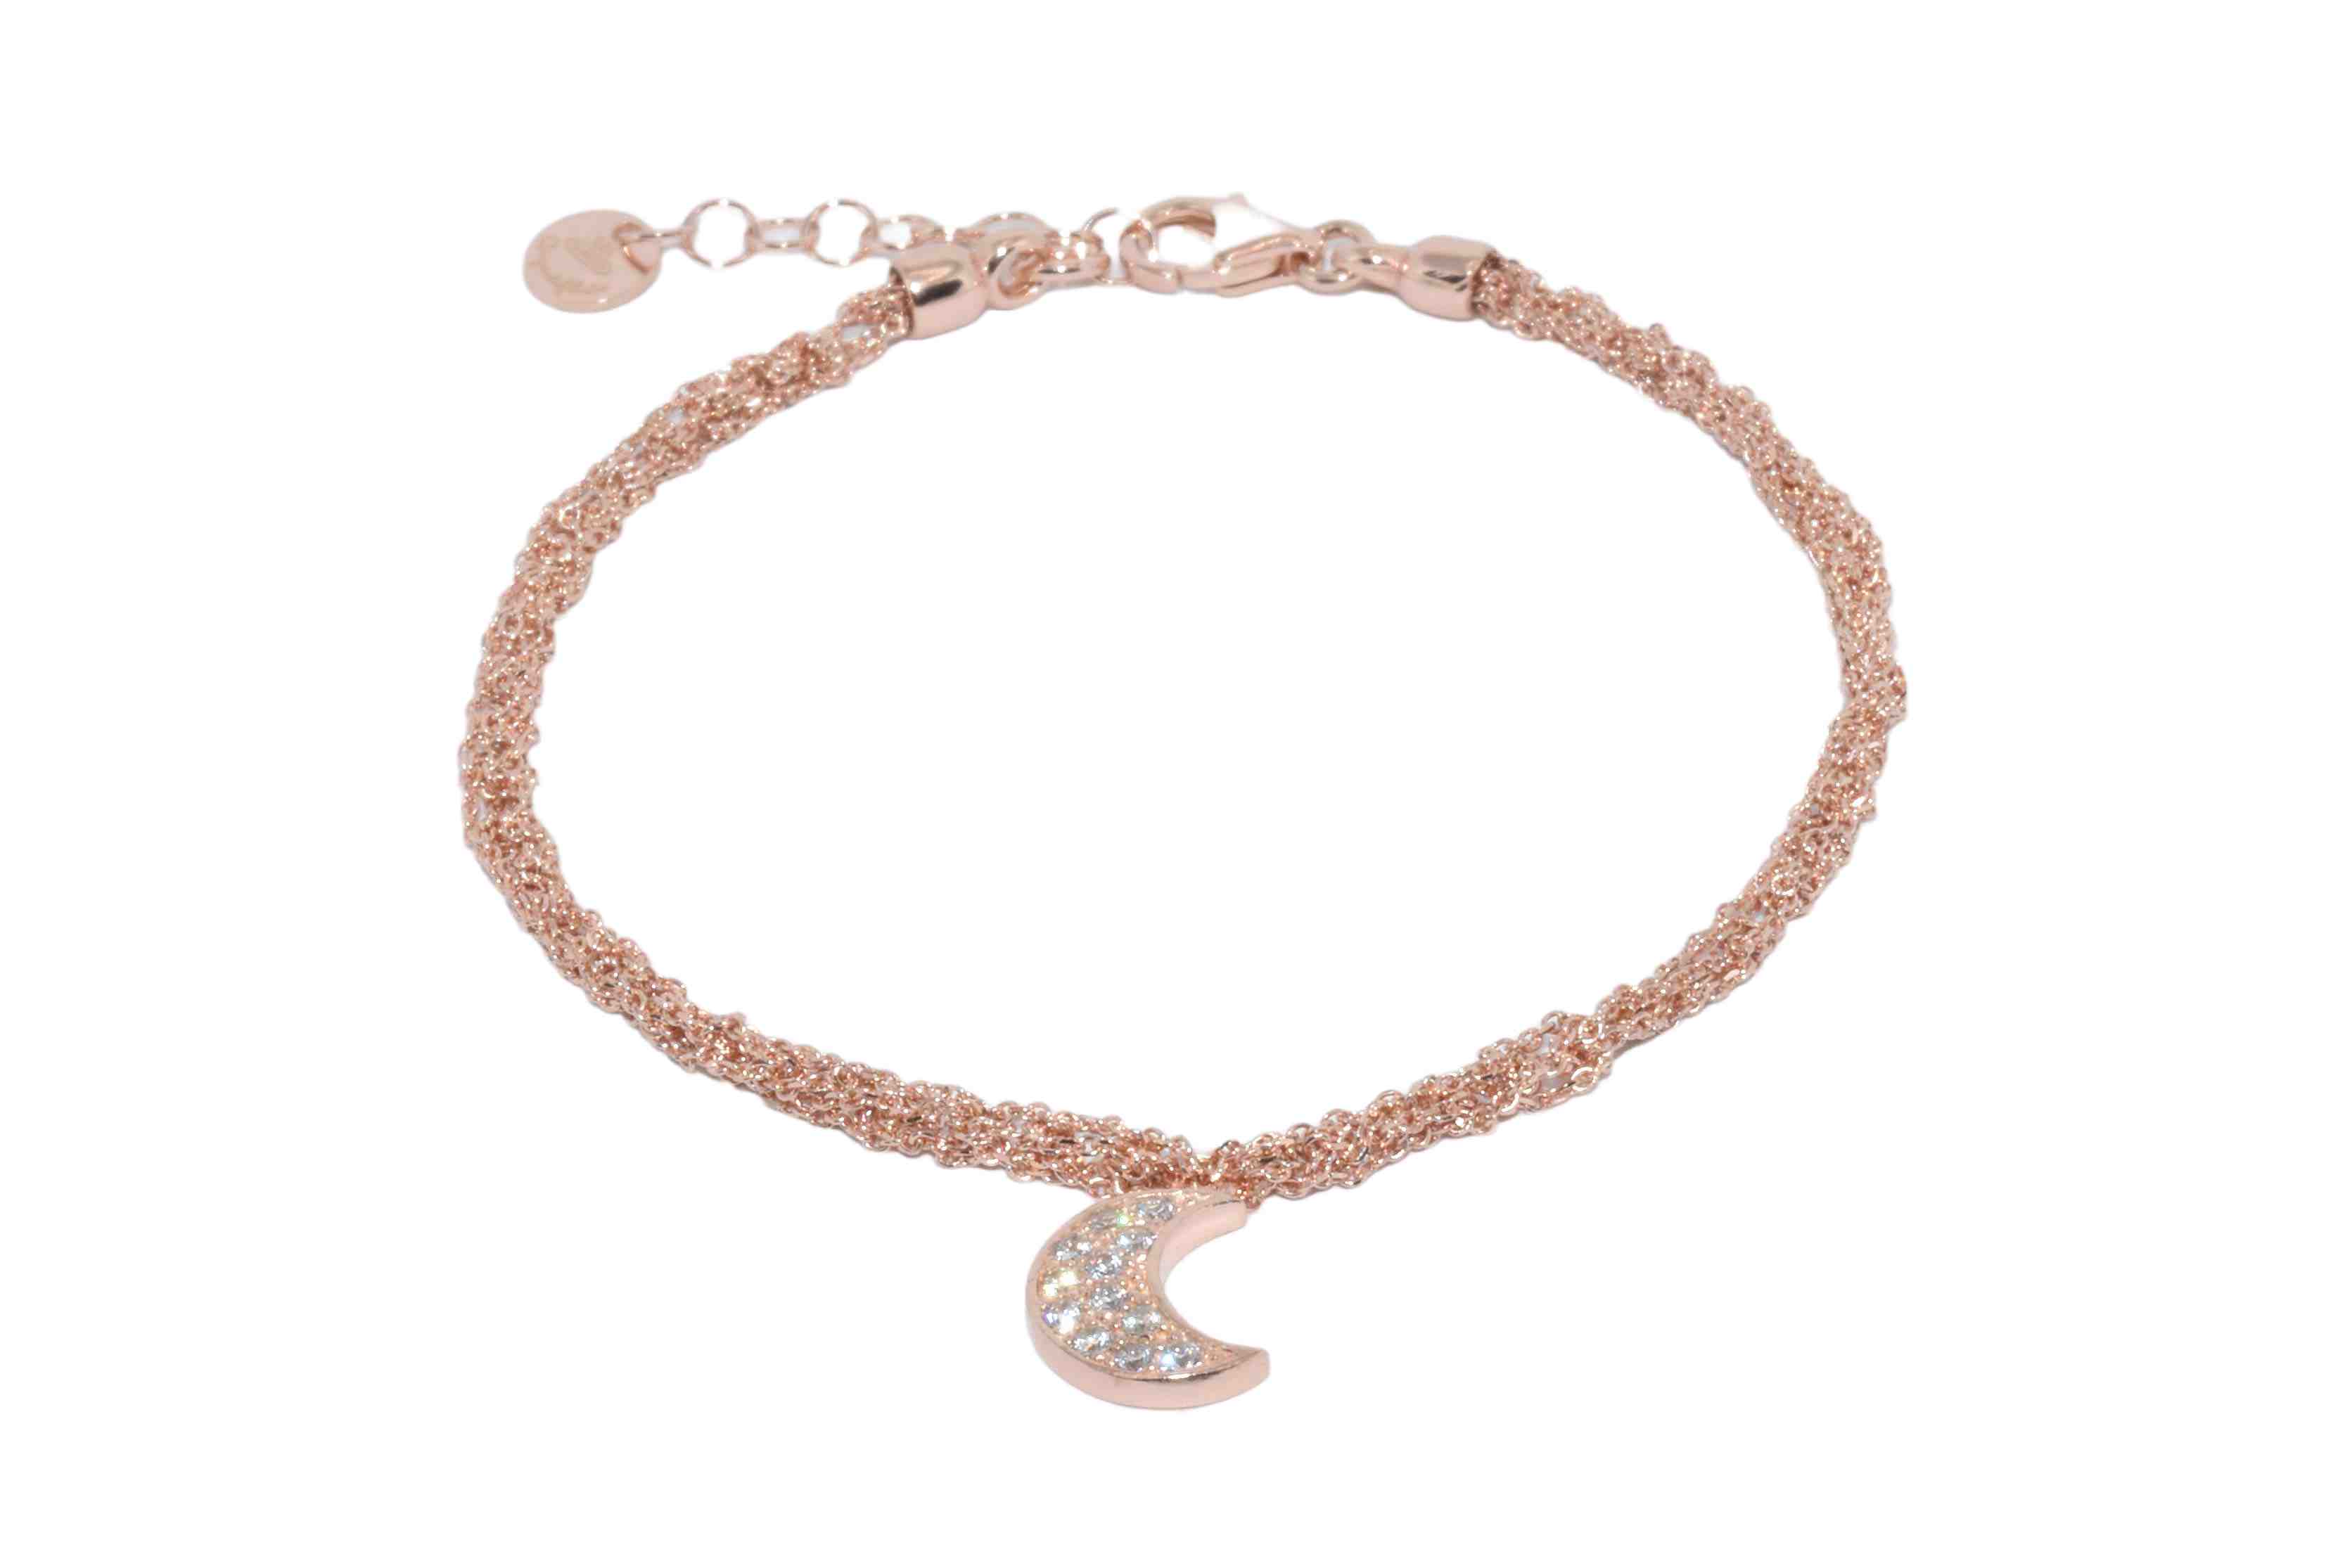 Bracciale-uncinetto-luna-con-zirconi-Argentofilato-in-argento-925-oro-rosa